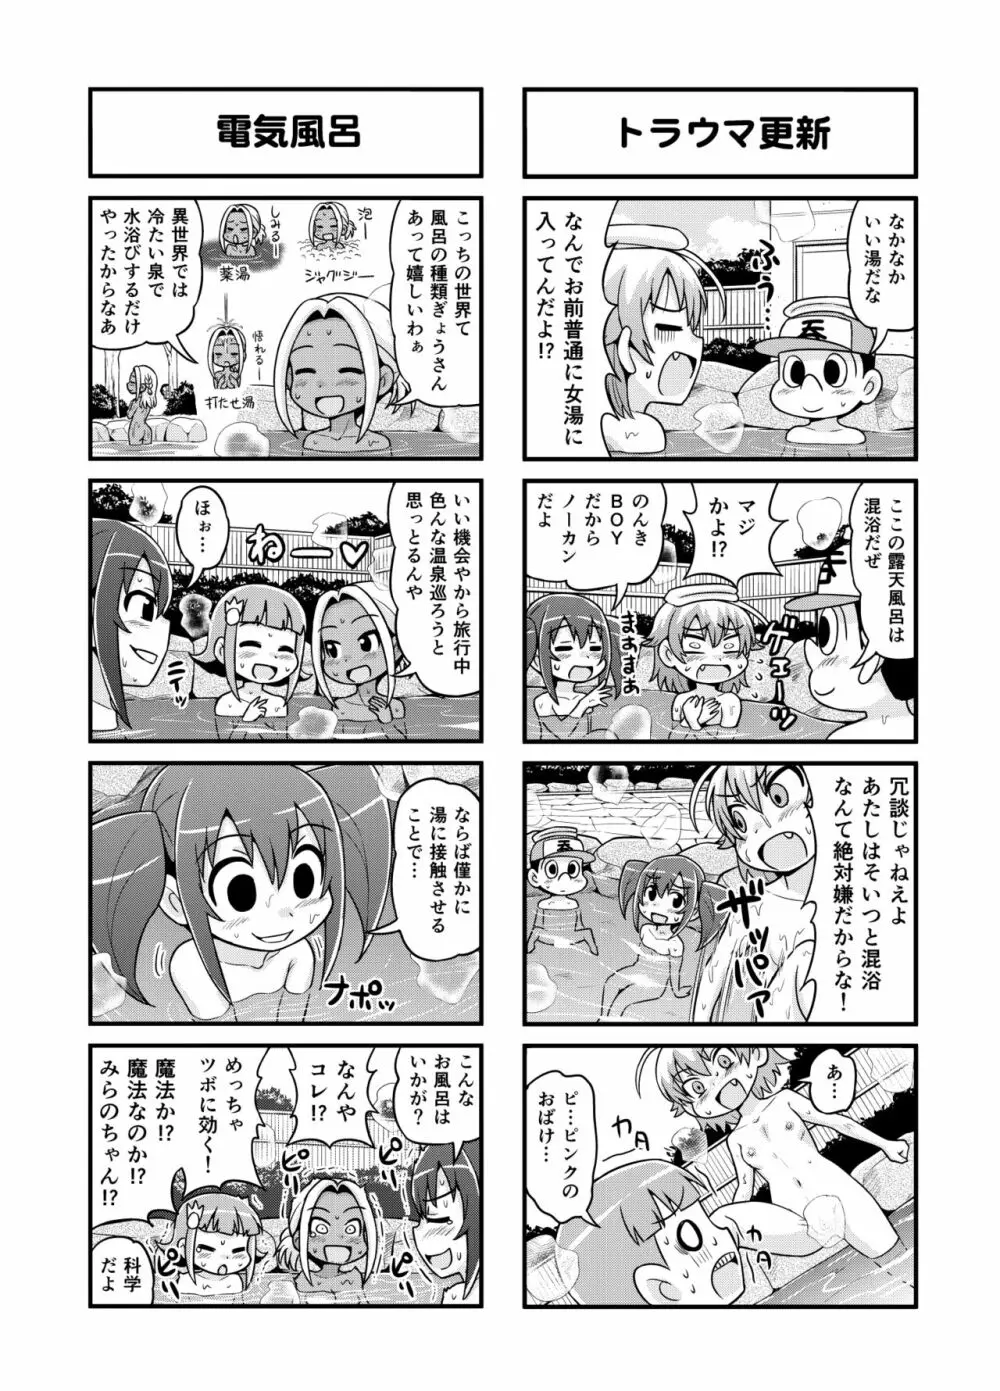 のんきBOY 1-41 138ページ